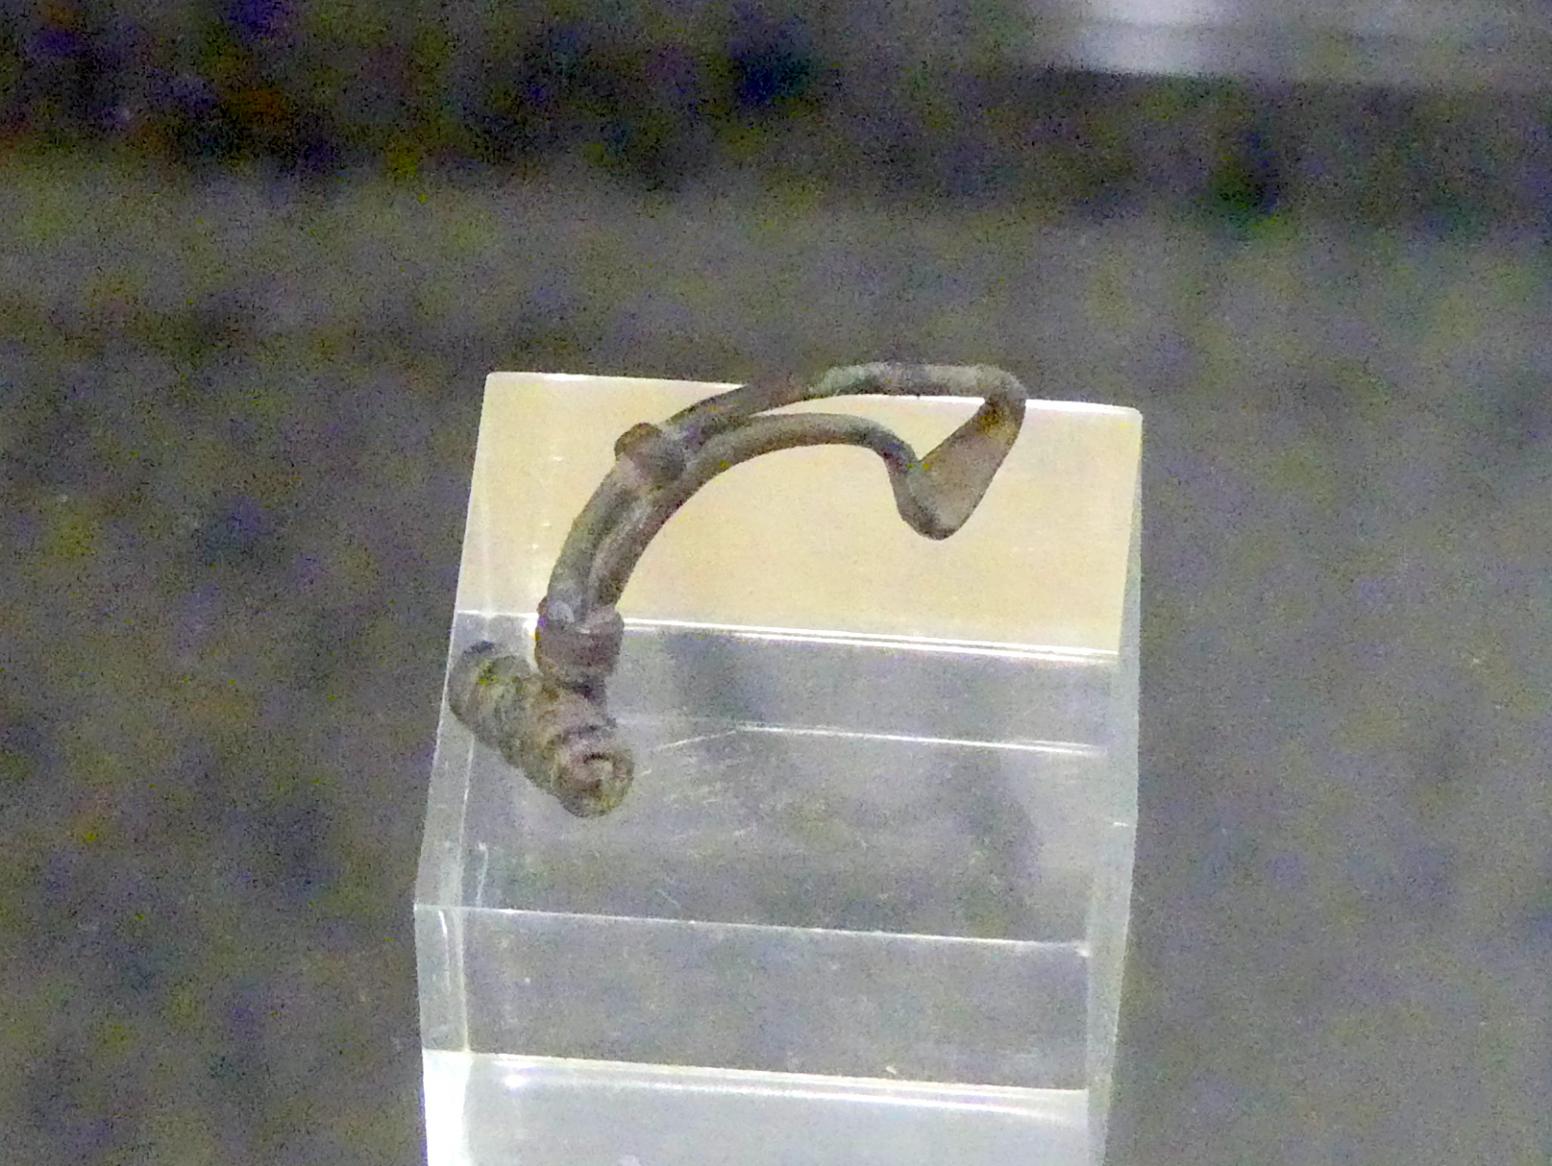 Spätkeltisch-germanische Fibel, Spätlatènezeit D2, 700 - 100 v. Chr.